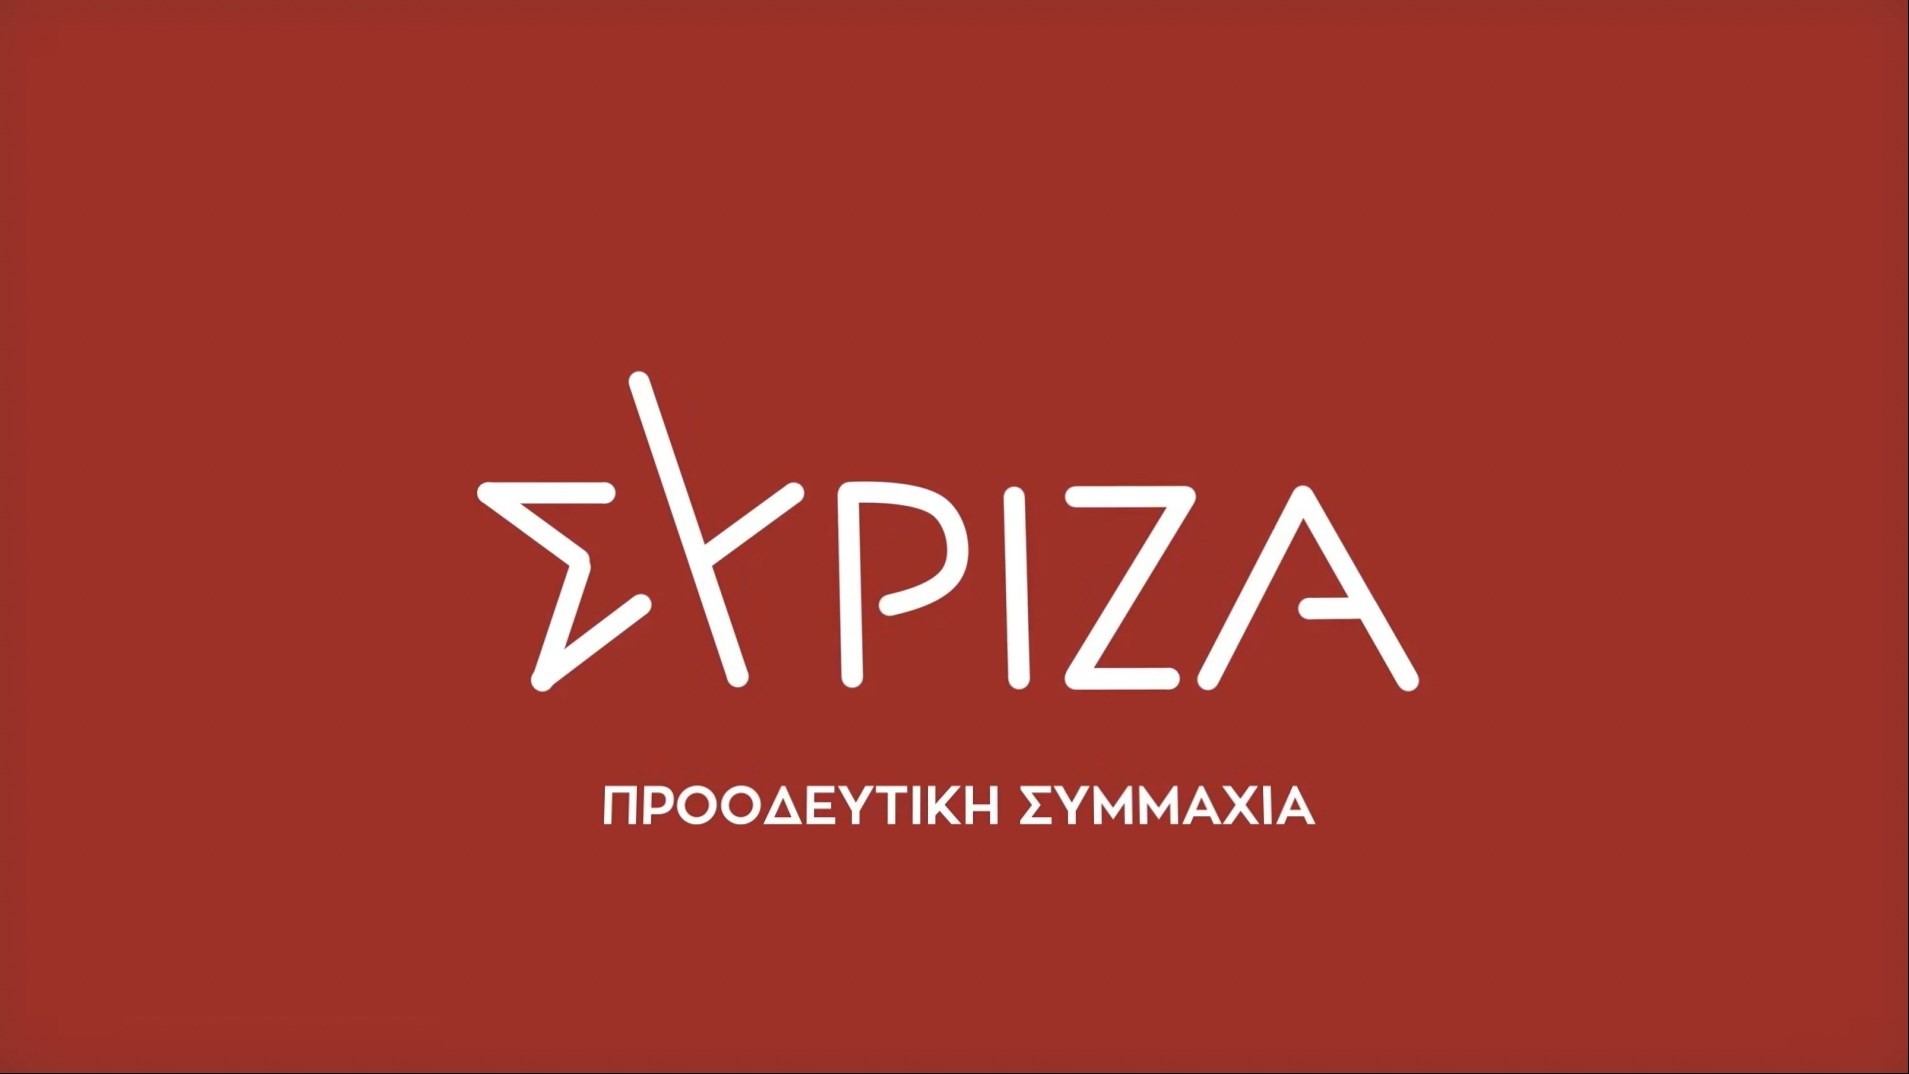 ΣΥΡΙΖΑ: Ο κ. Μητσοτάκης να σταματήσει τα επικοινωνιακά παιχνίδια την ώρα της καταστροφής